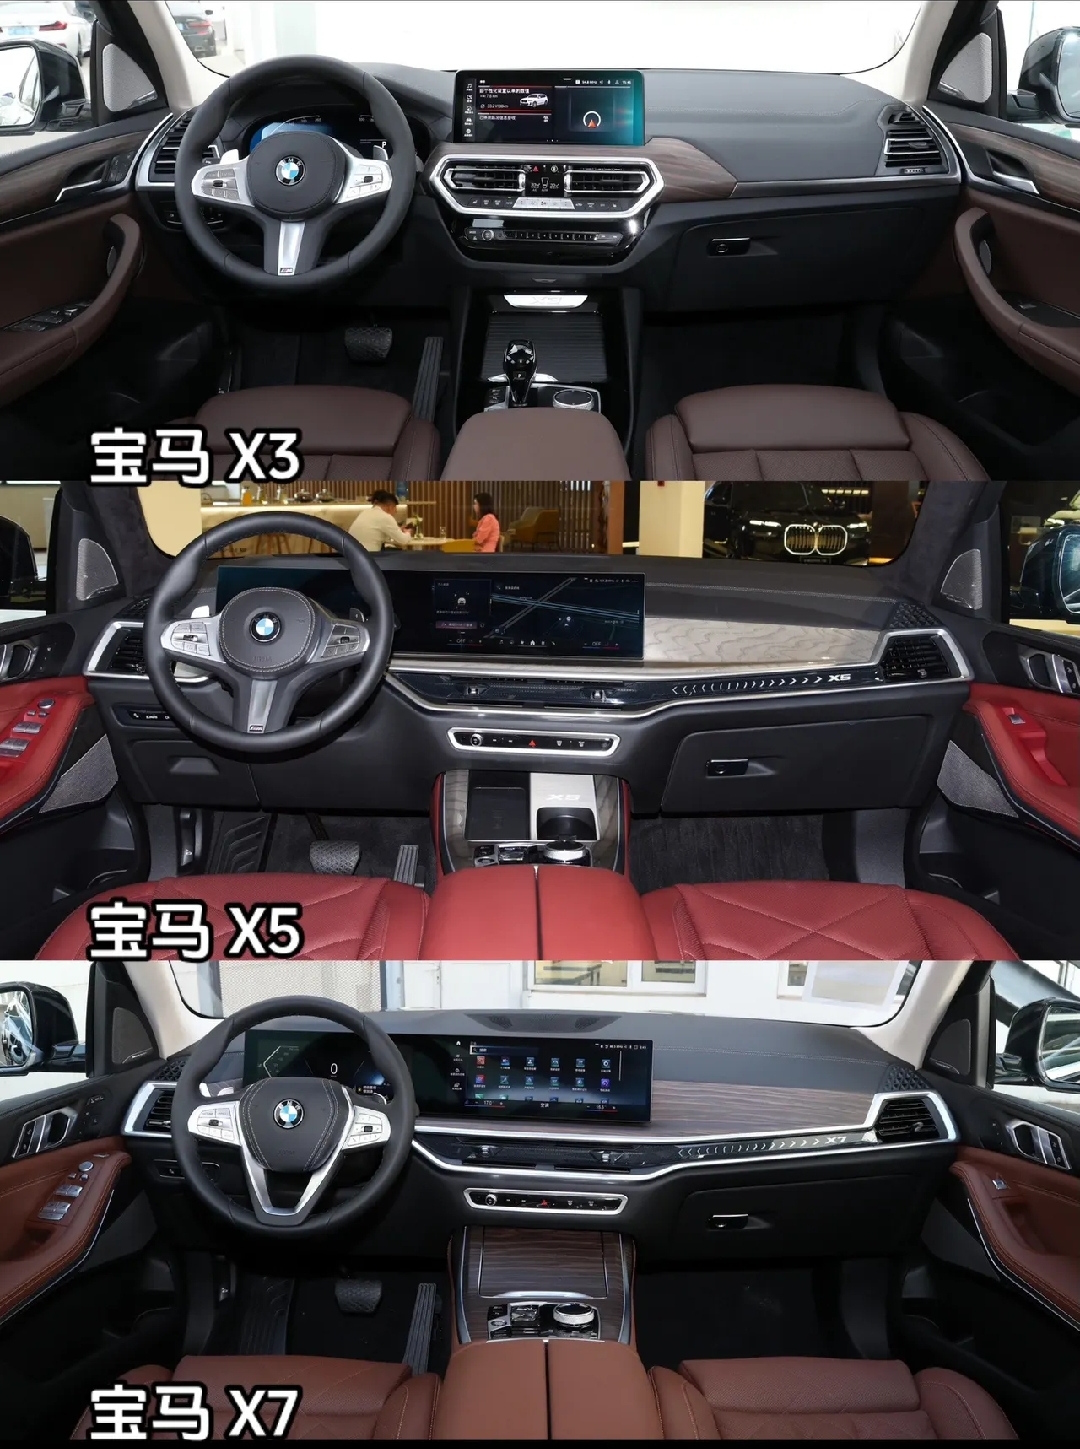 宝马 x3,x5,x7 是宝马品牌旗下的三款主力 suv 车型,它们在外观,内饰